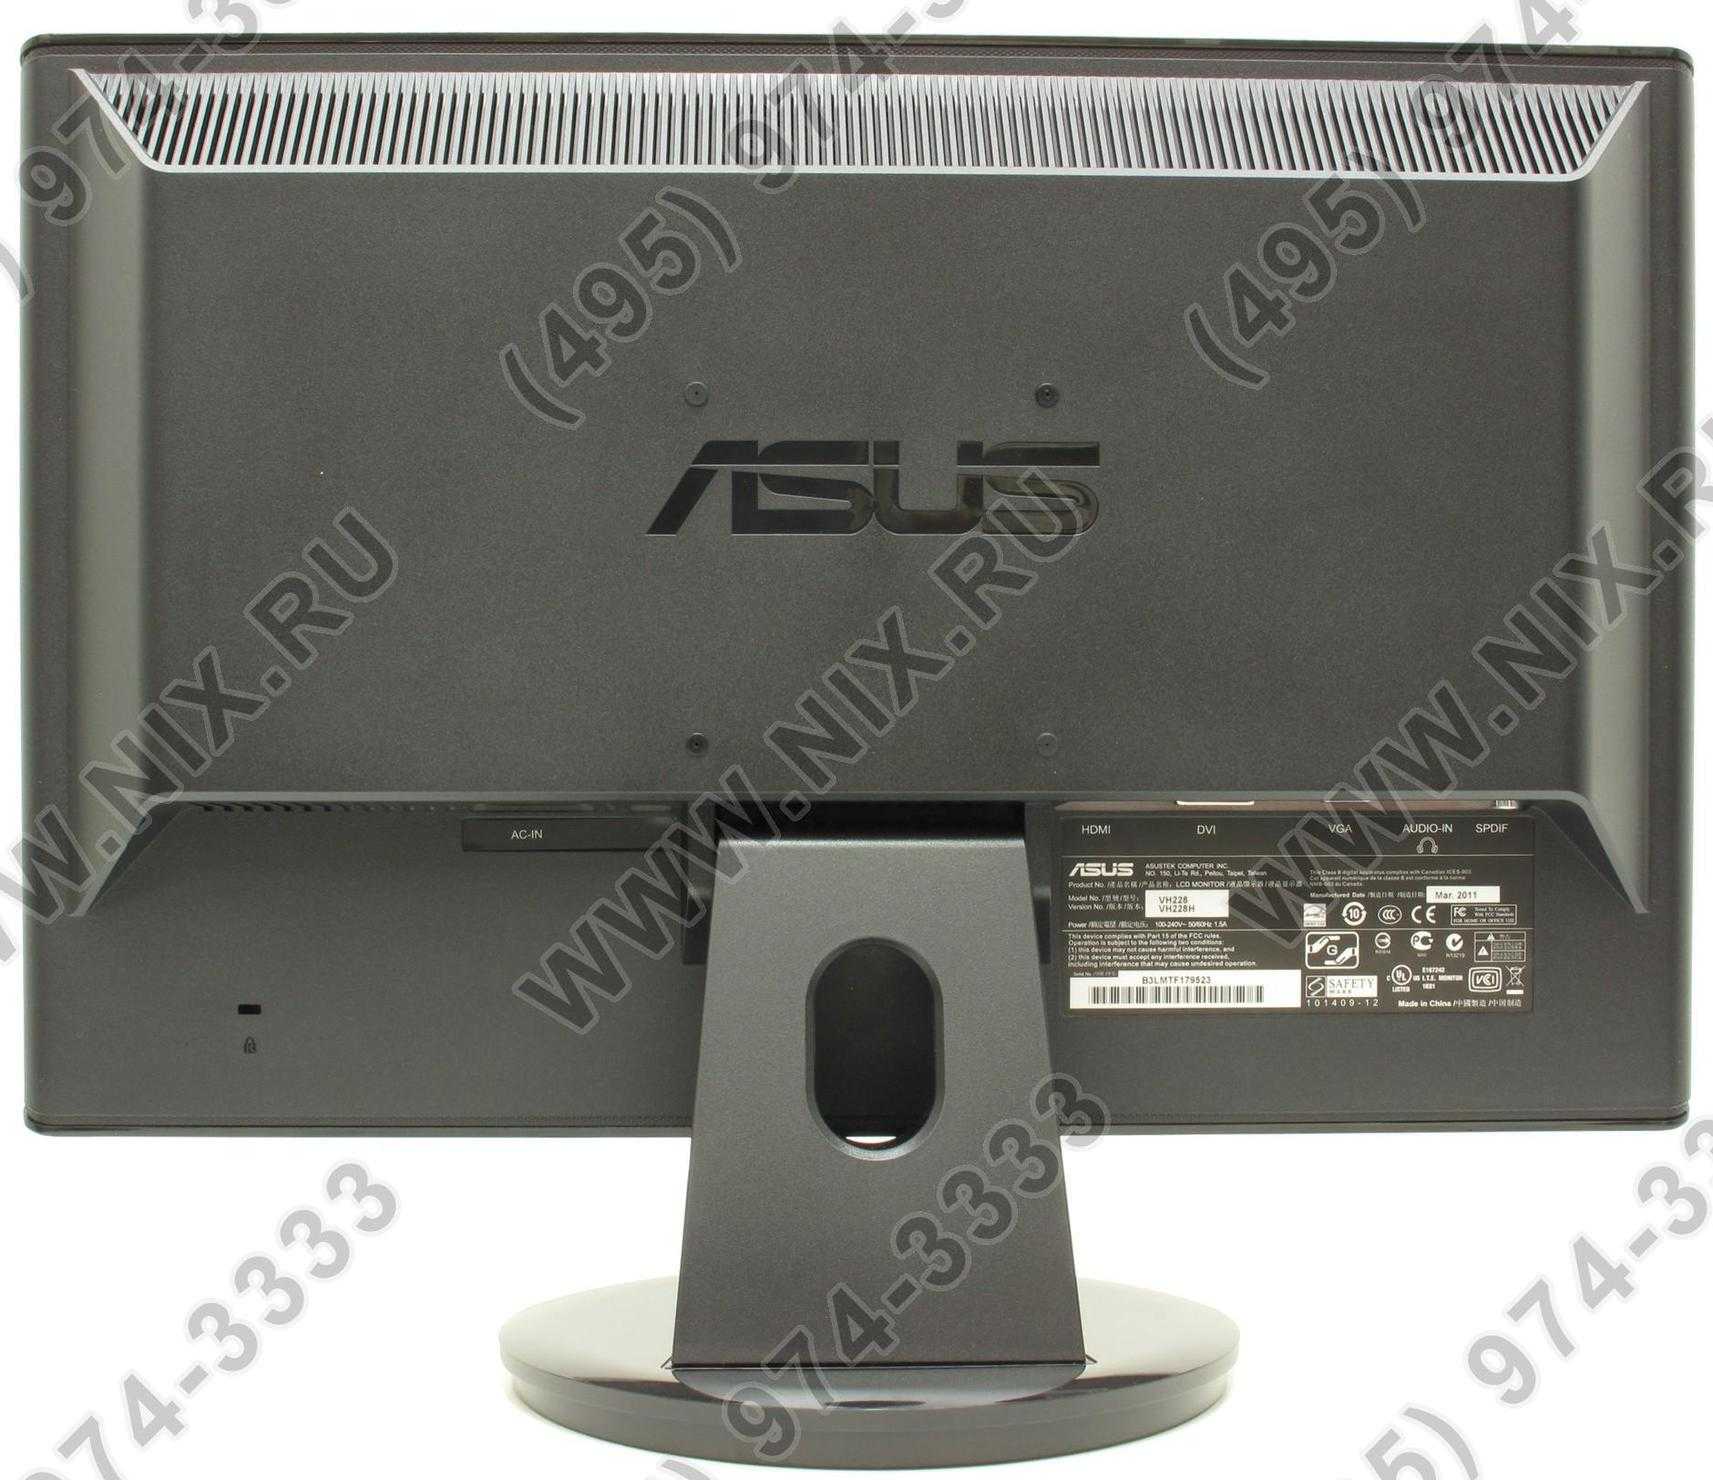 Монитор Asus VH228H - подробные характеристики обзоры видео фото Цены в интернет-магазинах где можно купить монитор Asus VH228H